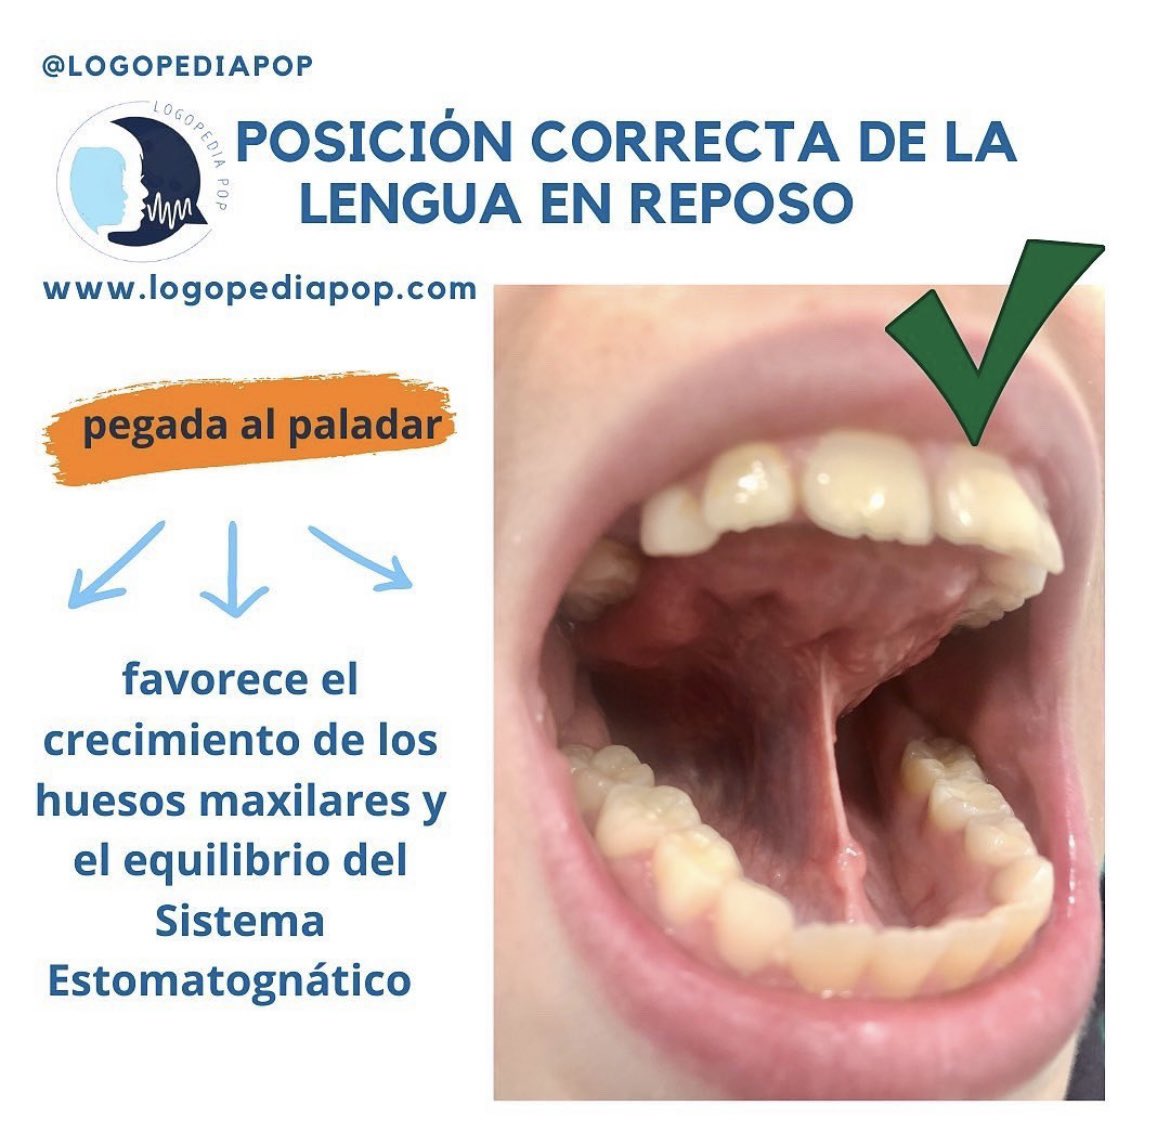 La posición de la lengua en reposo es clave para una buena salud oral. ¡Recuerda mantenerla en contacto con el paladar! 👅🤗 #SaludOral #HábitosSaludables #uv_rtl23